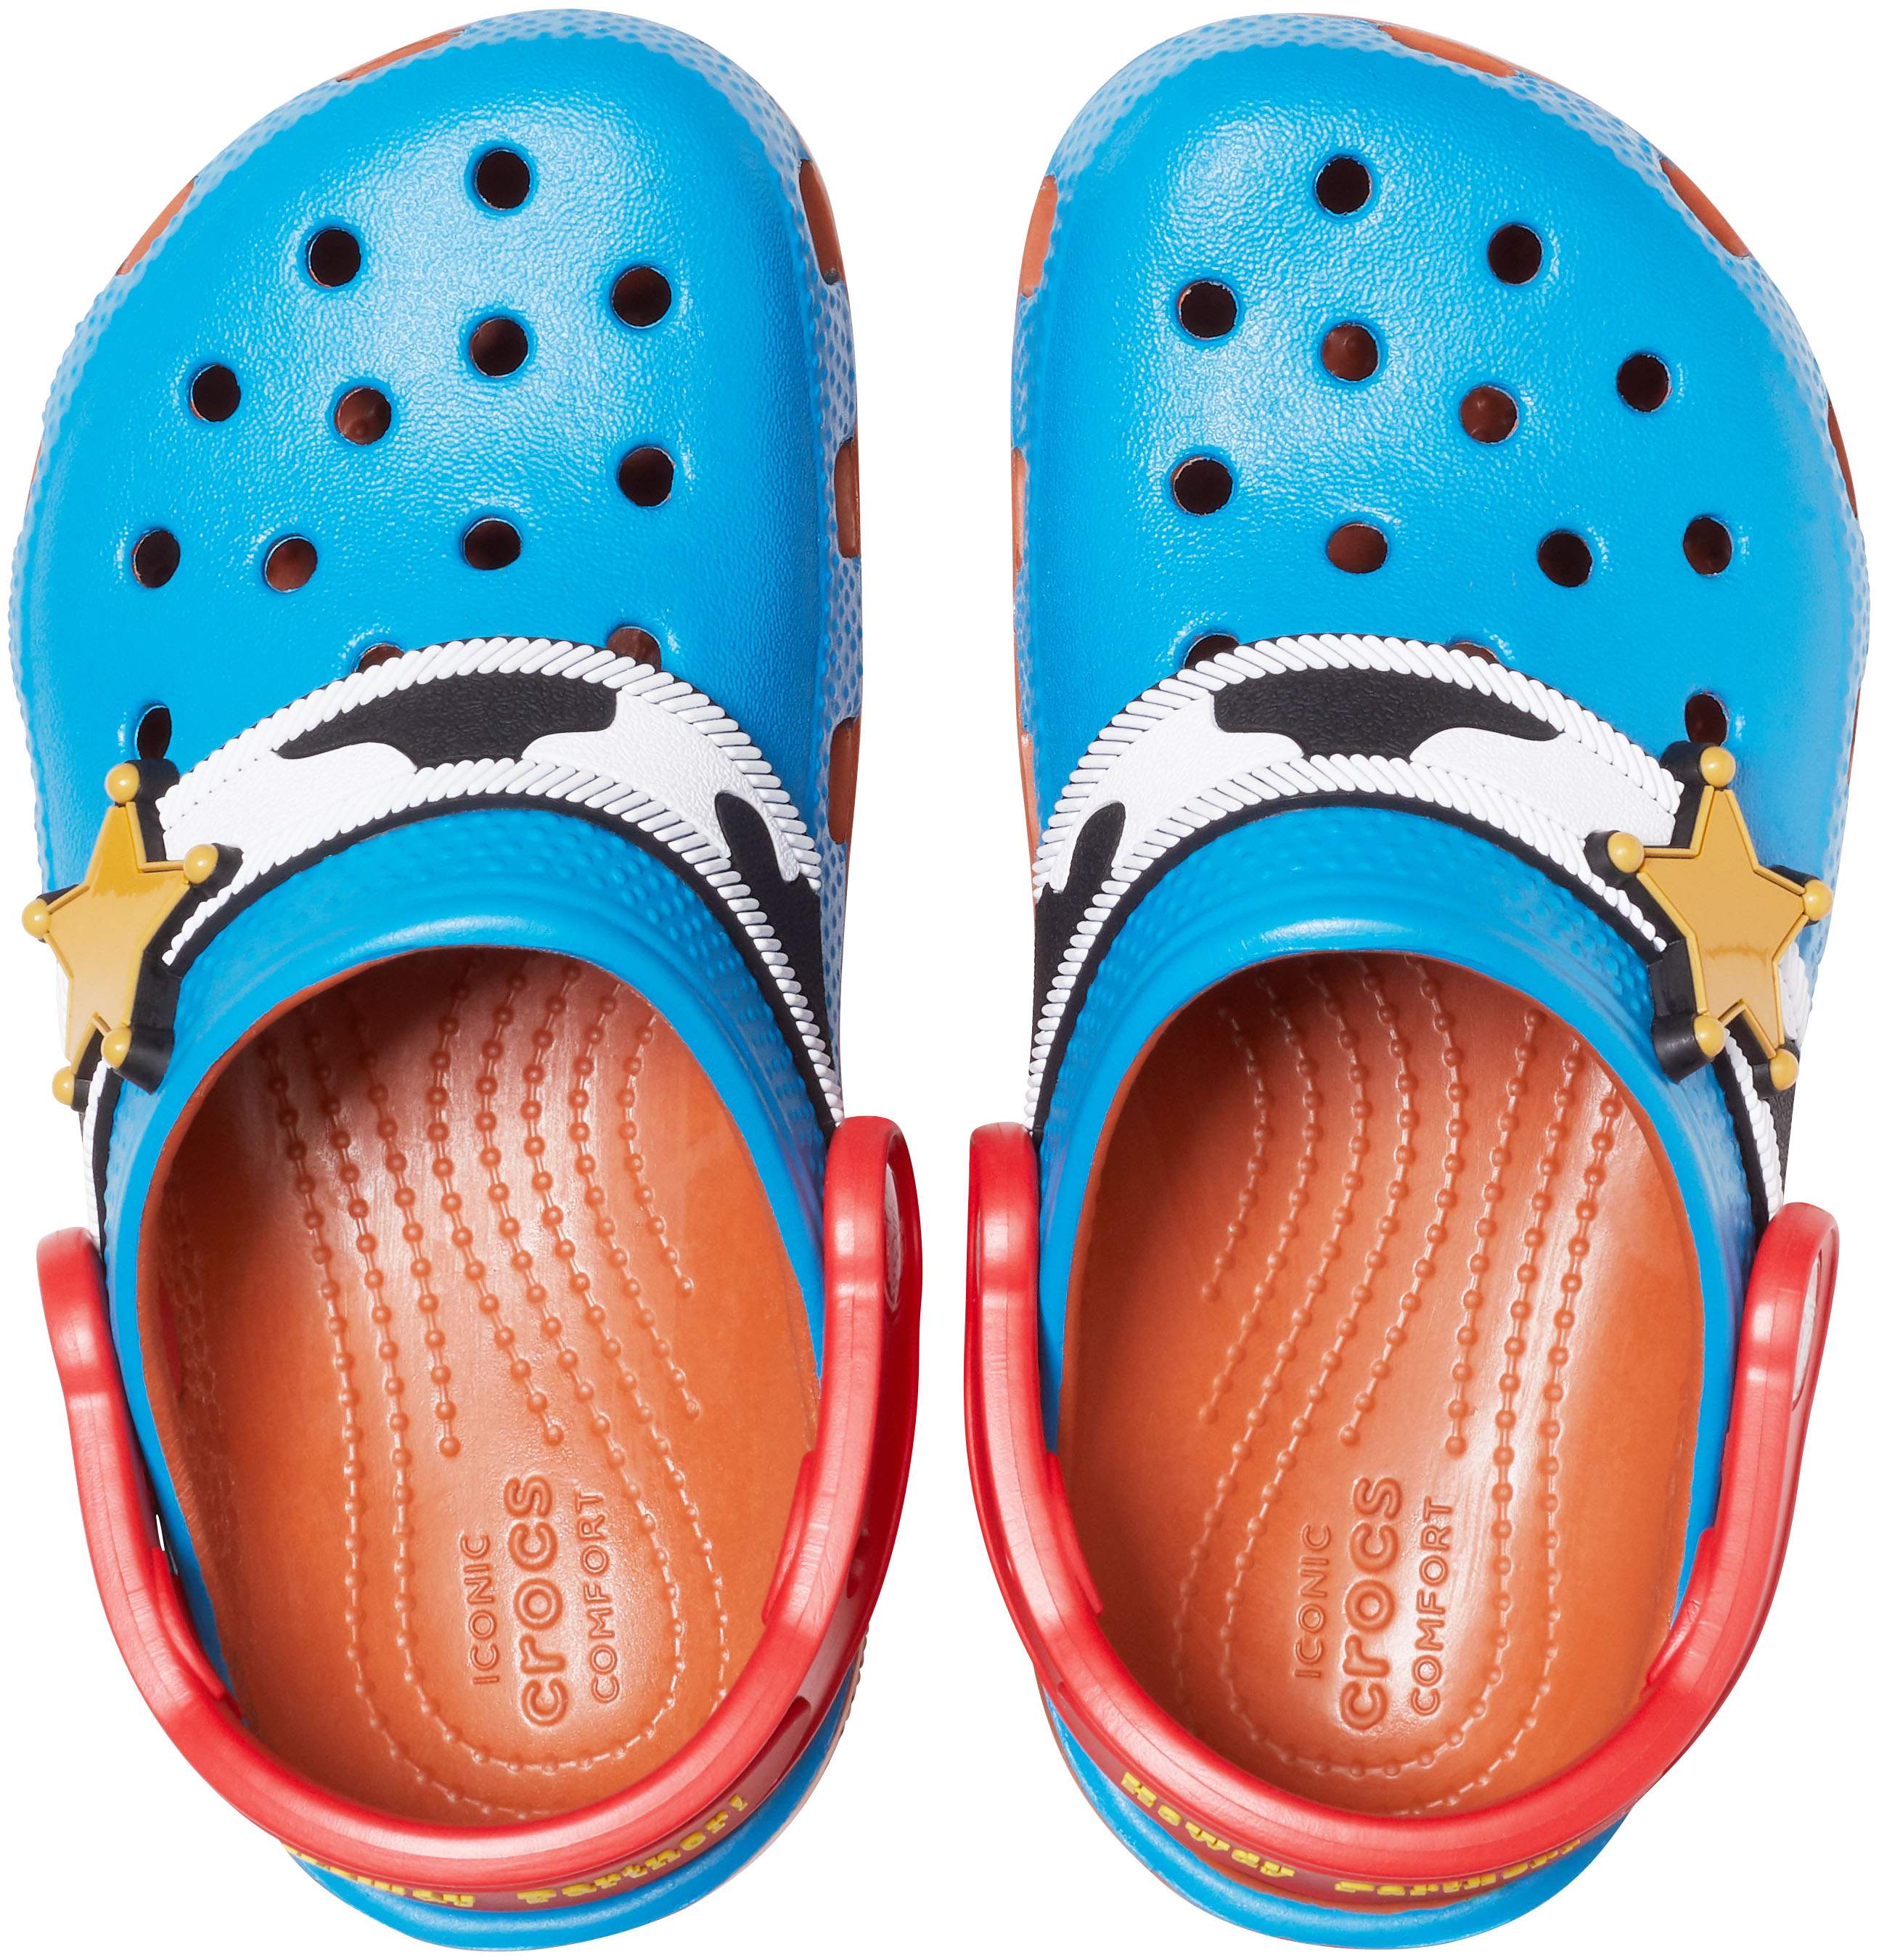 toy story crocs size 8 9